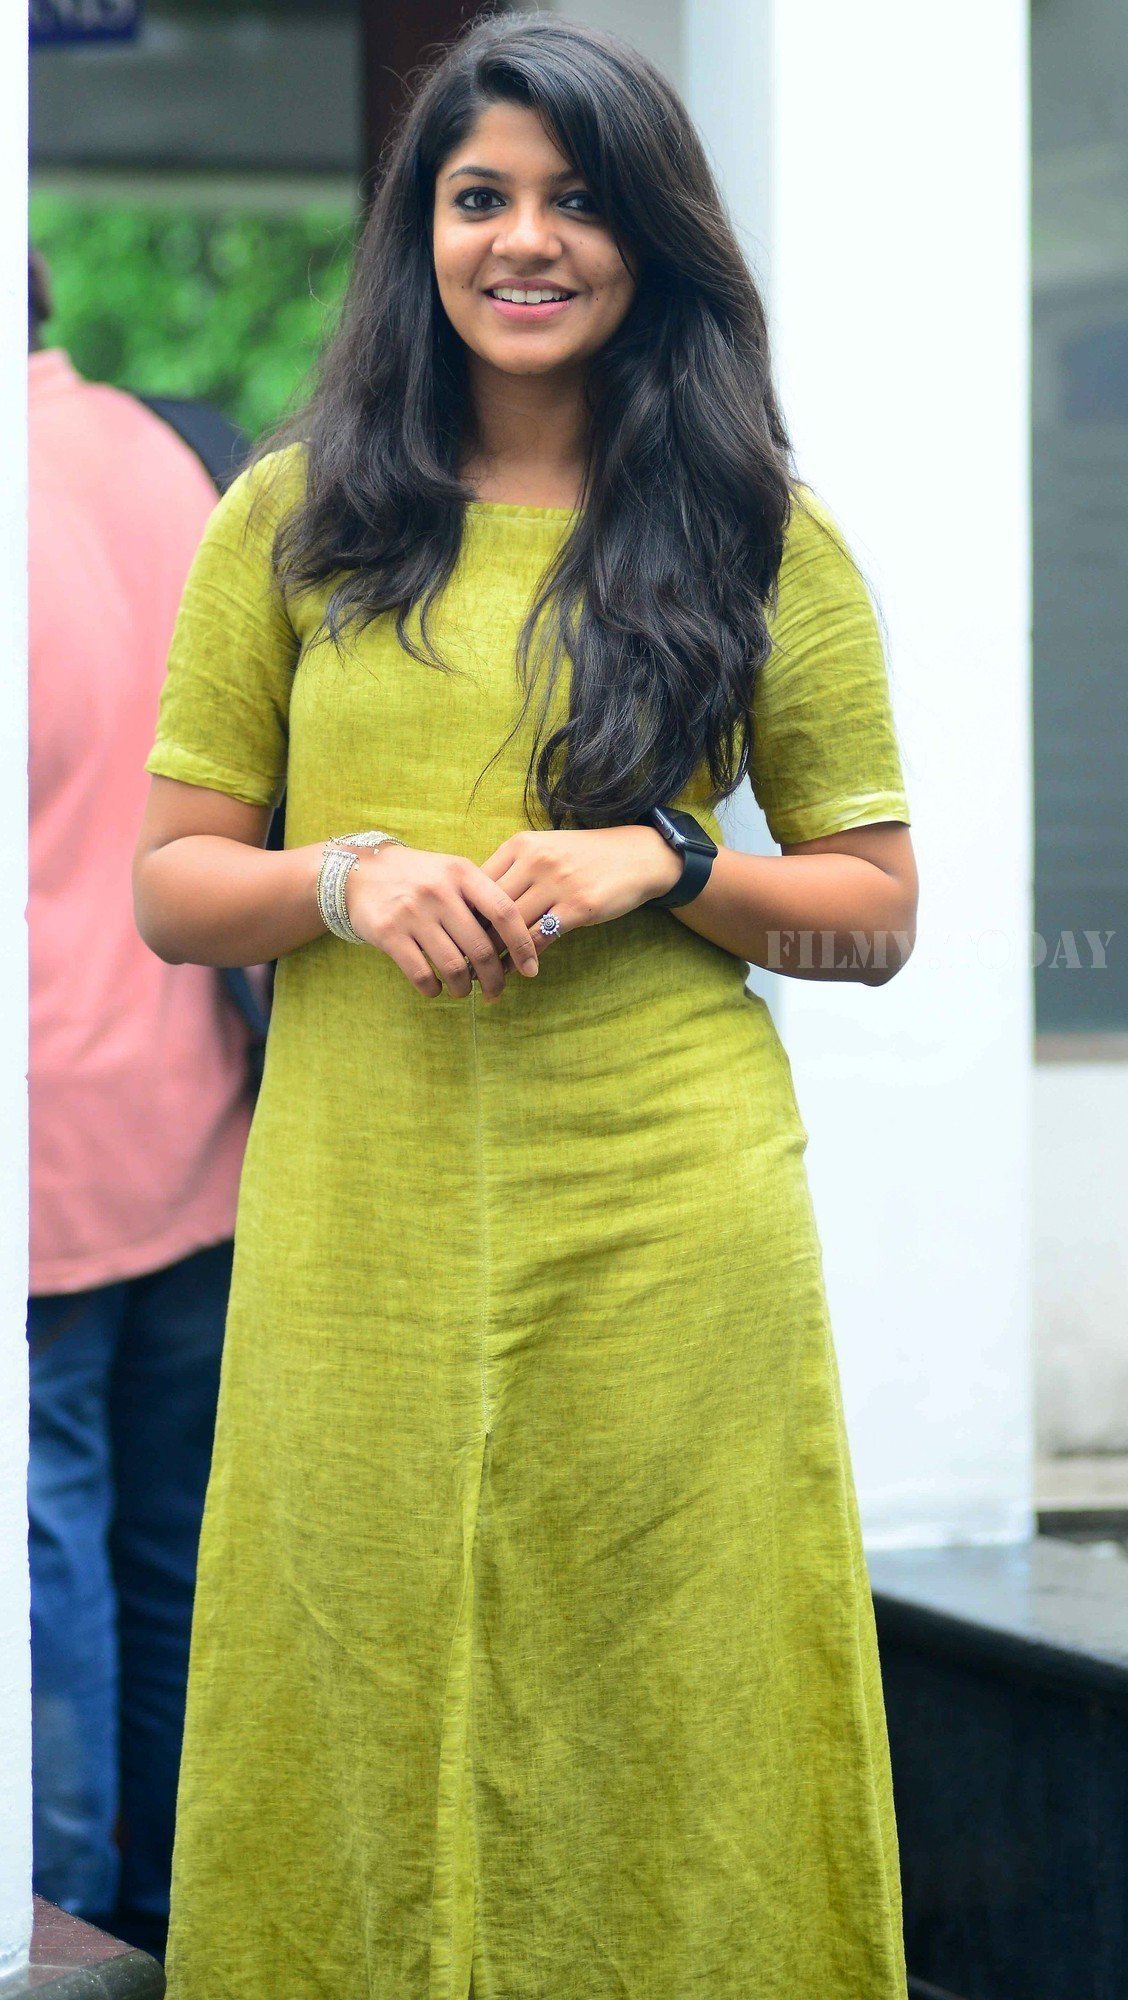 Actress Aparna Balamurali during Portfolio Shoot | Picture 1525625